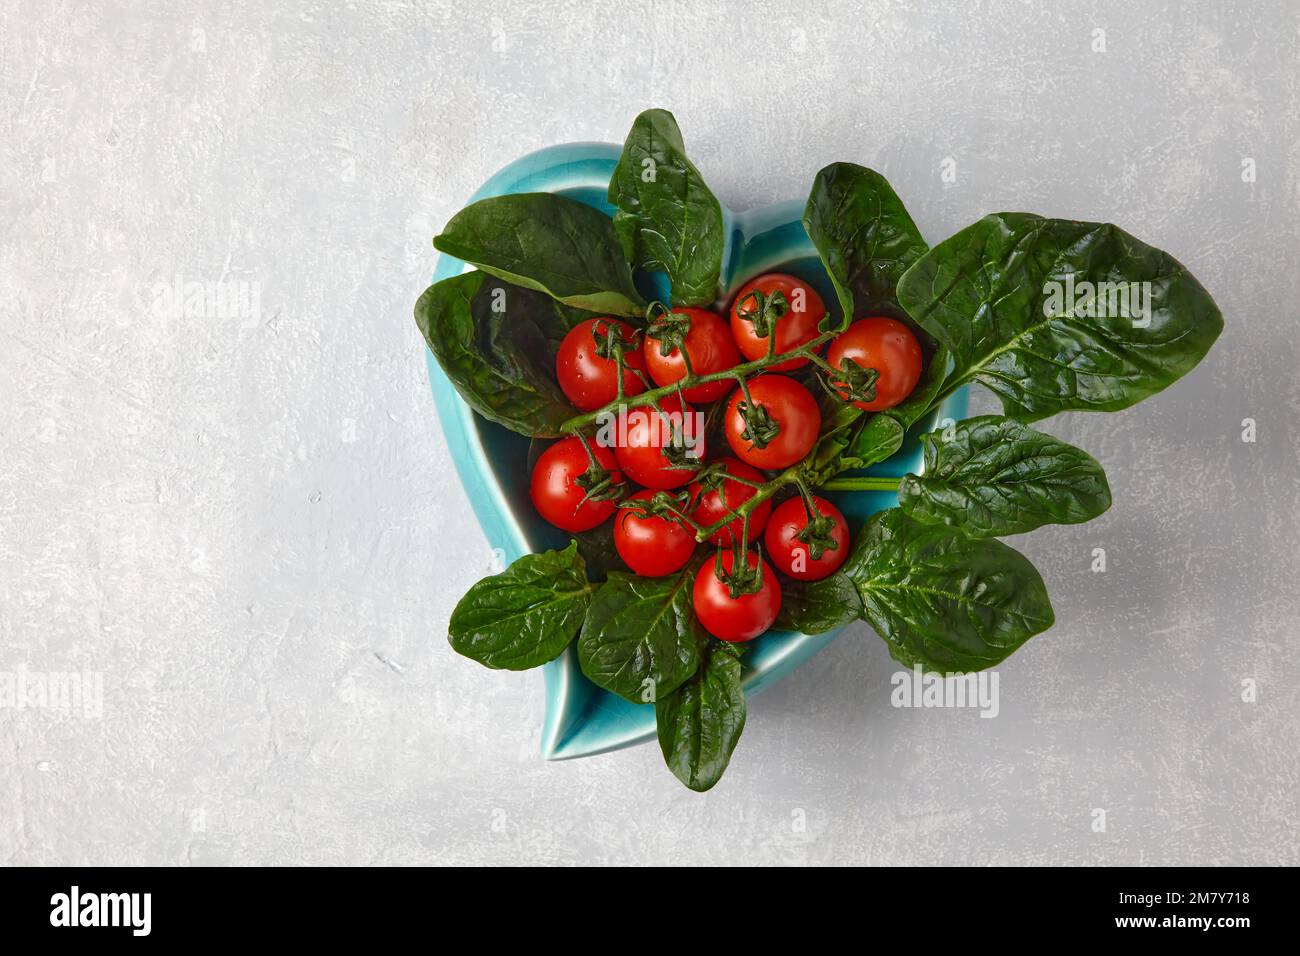 Pomodori ciliegini rossi su un ramo e foglie di spinaci verdi in una ciotola blu a forma di cuore su un tavolo di cemento chiaro Foto Stock